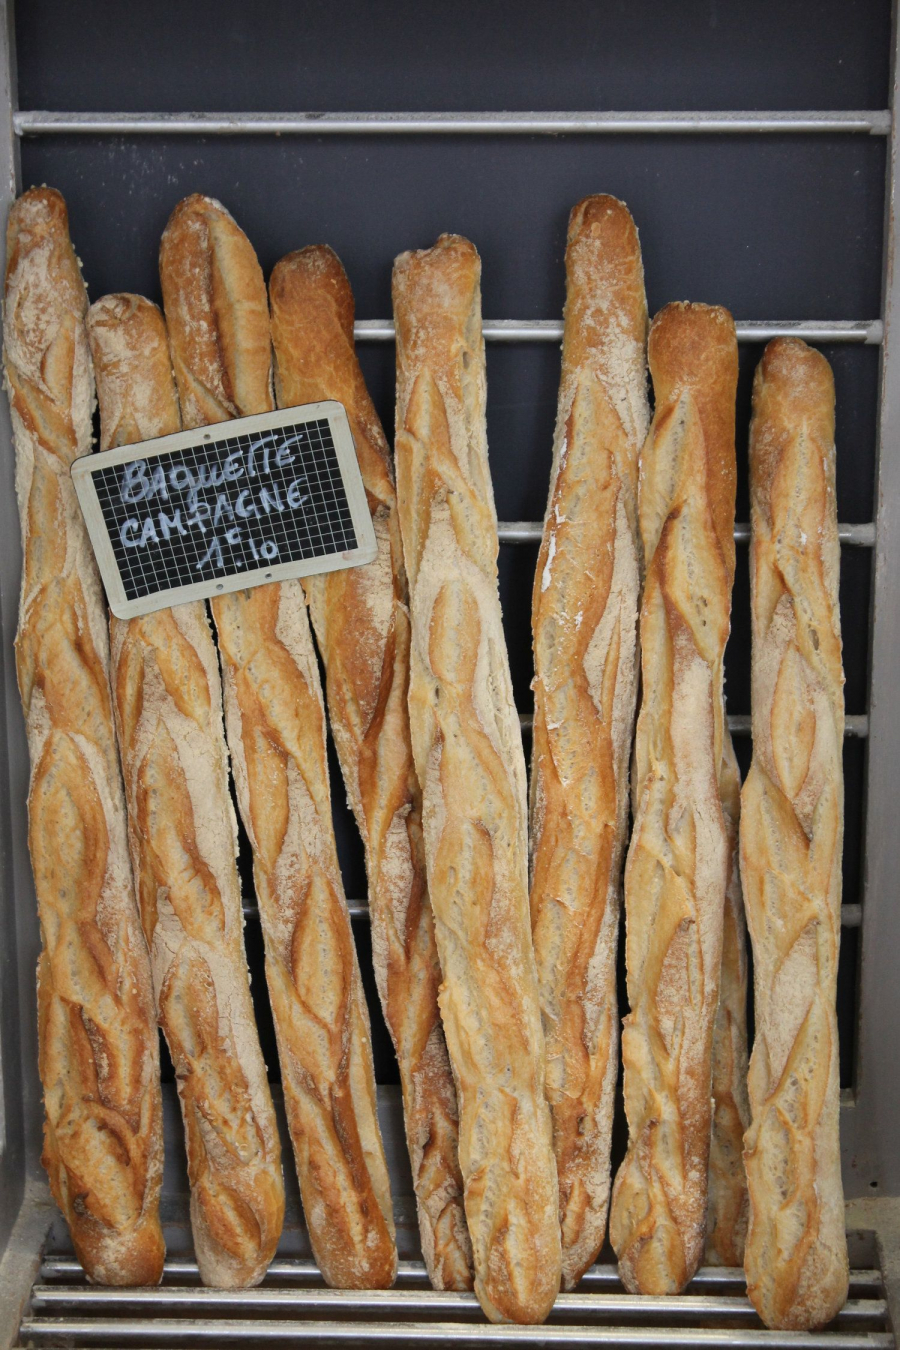 Sắc Lệnh Bánh Mì năm 1993 quy định theo luật một baguette thực sự truyền thống phải được làm bằng tay, được bán ở nơi nướng bánh và chỉ được làm bằng nước, bột mì, men và muối